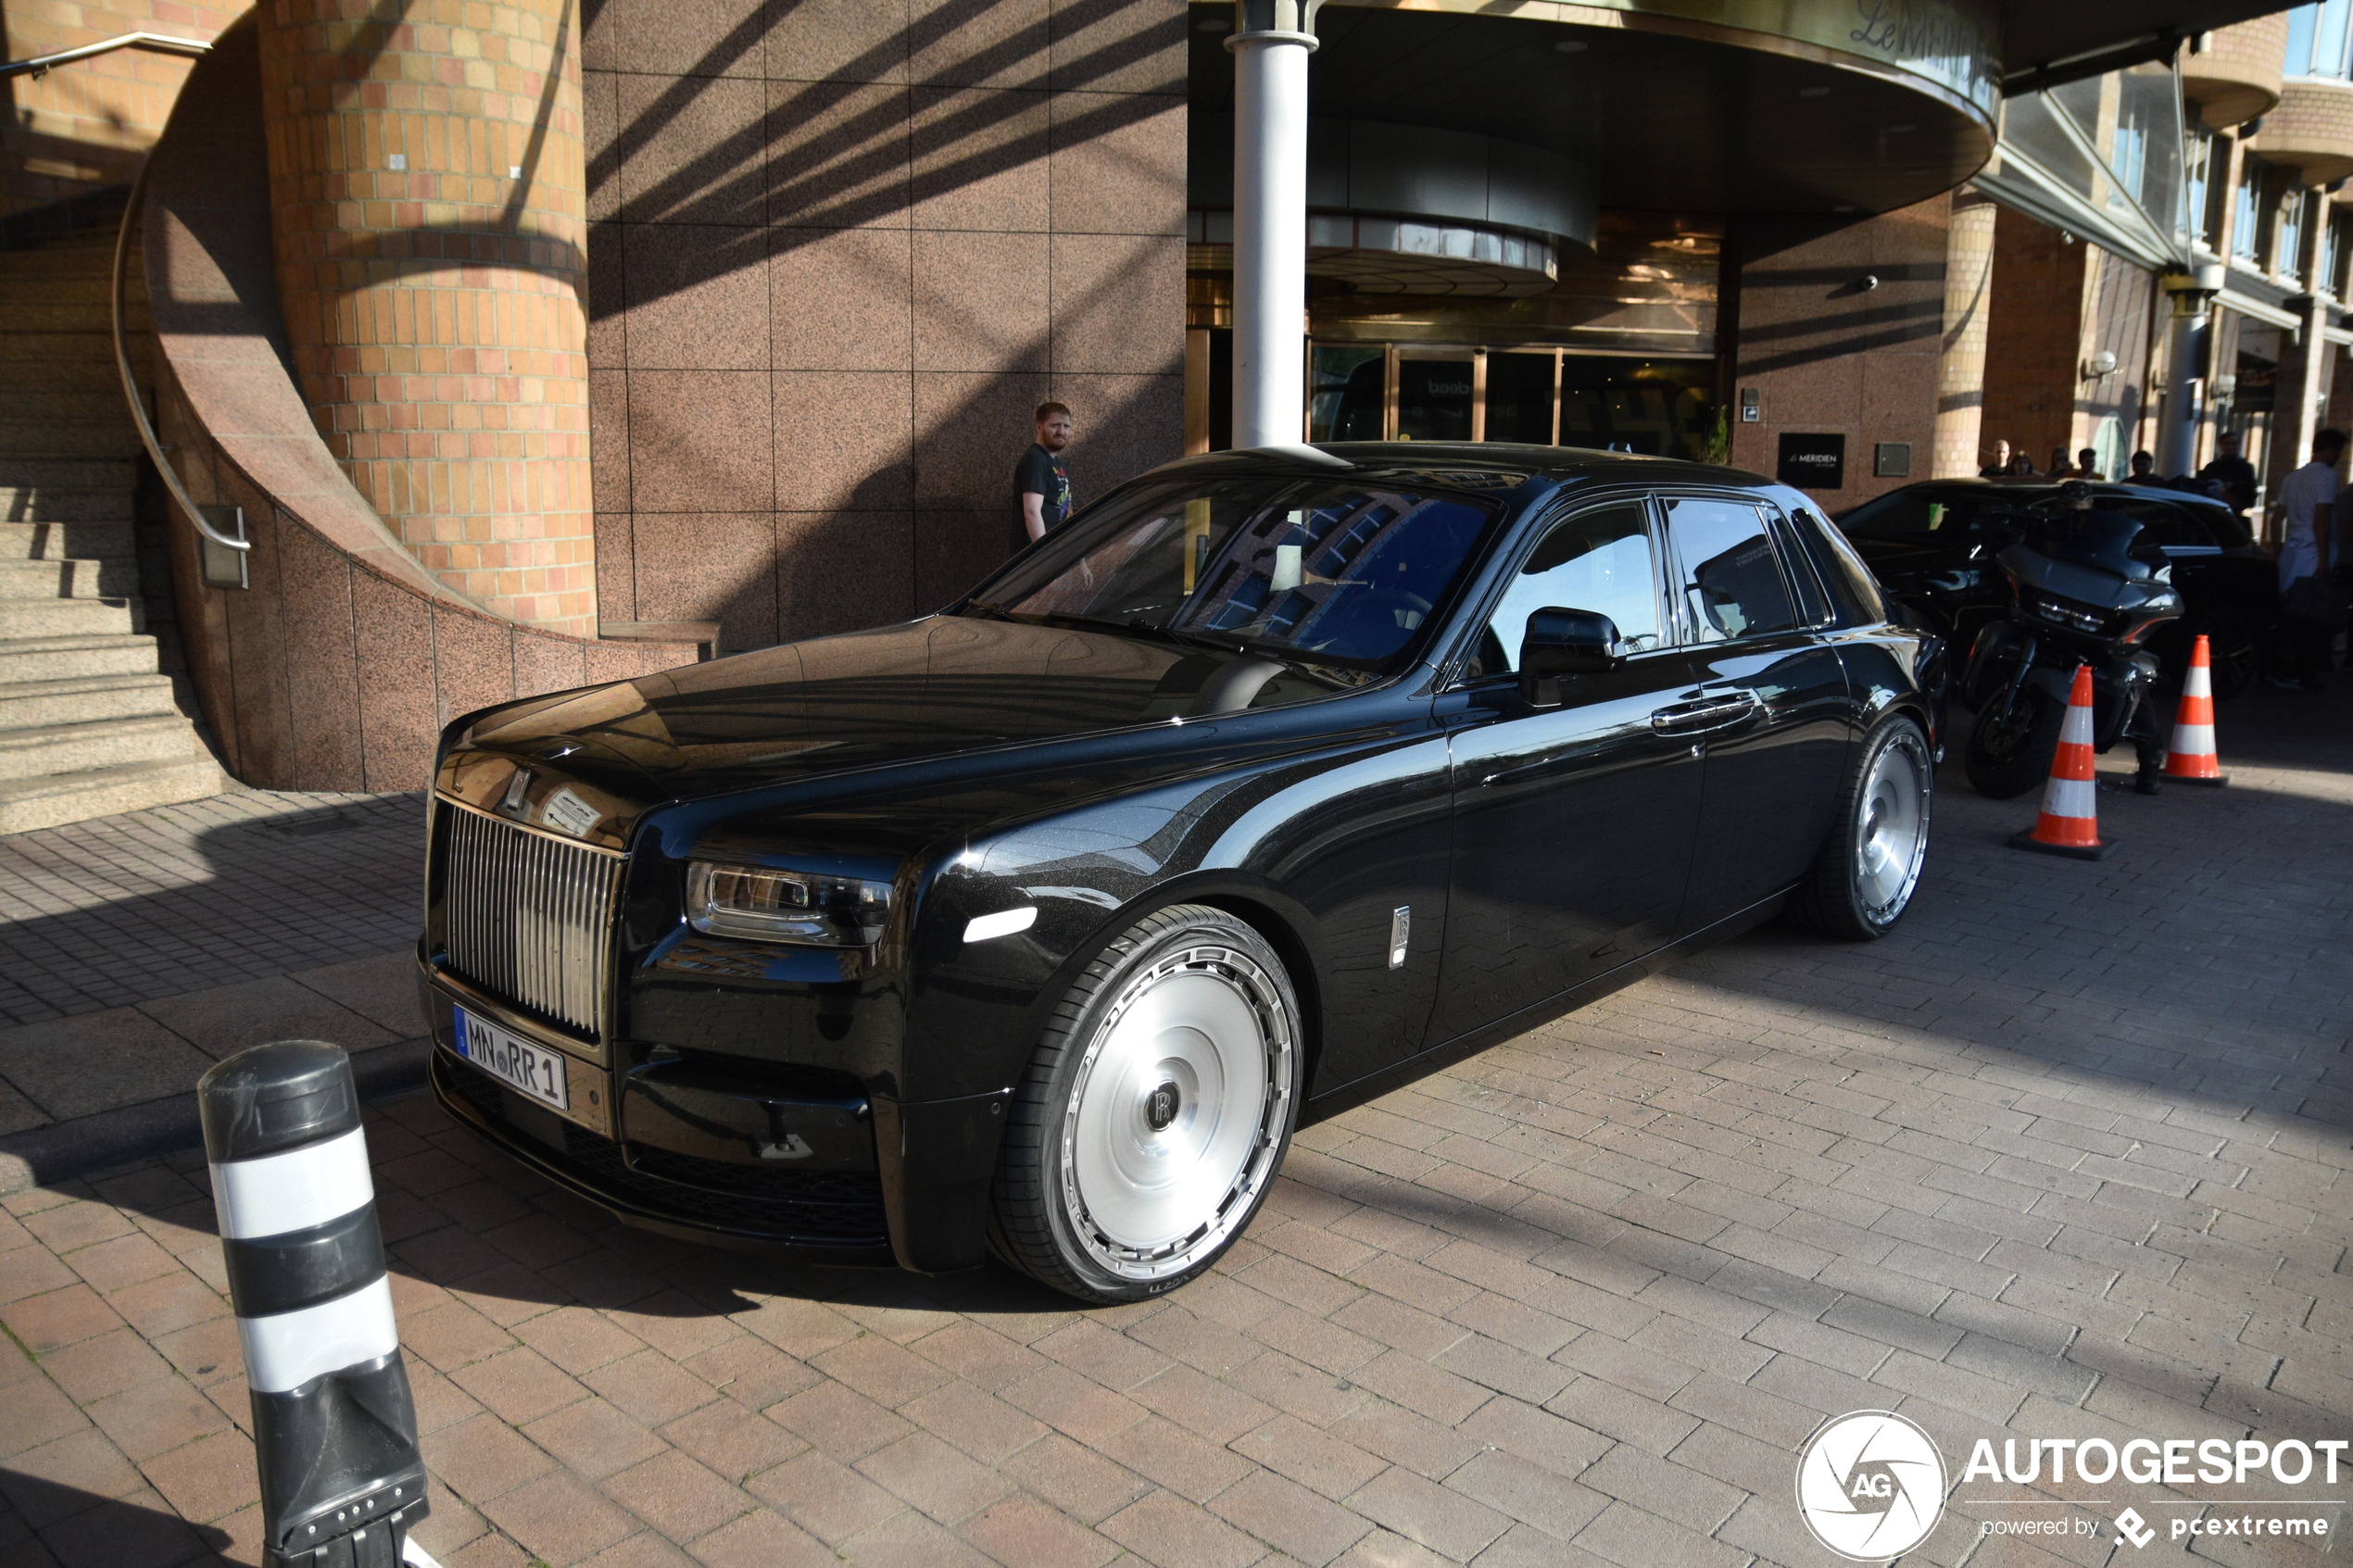 Rolls-Royce Phantom heeft wel hele bijzondere velgen